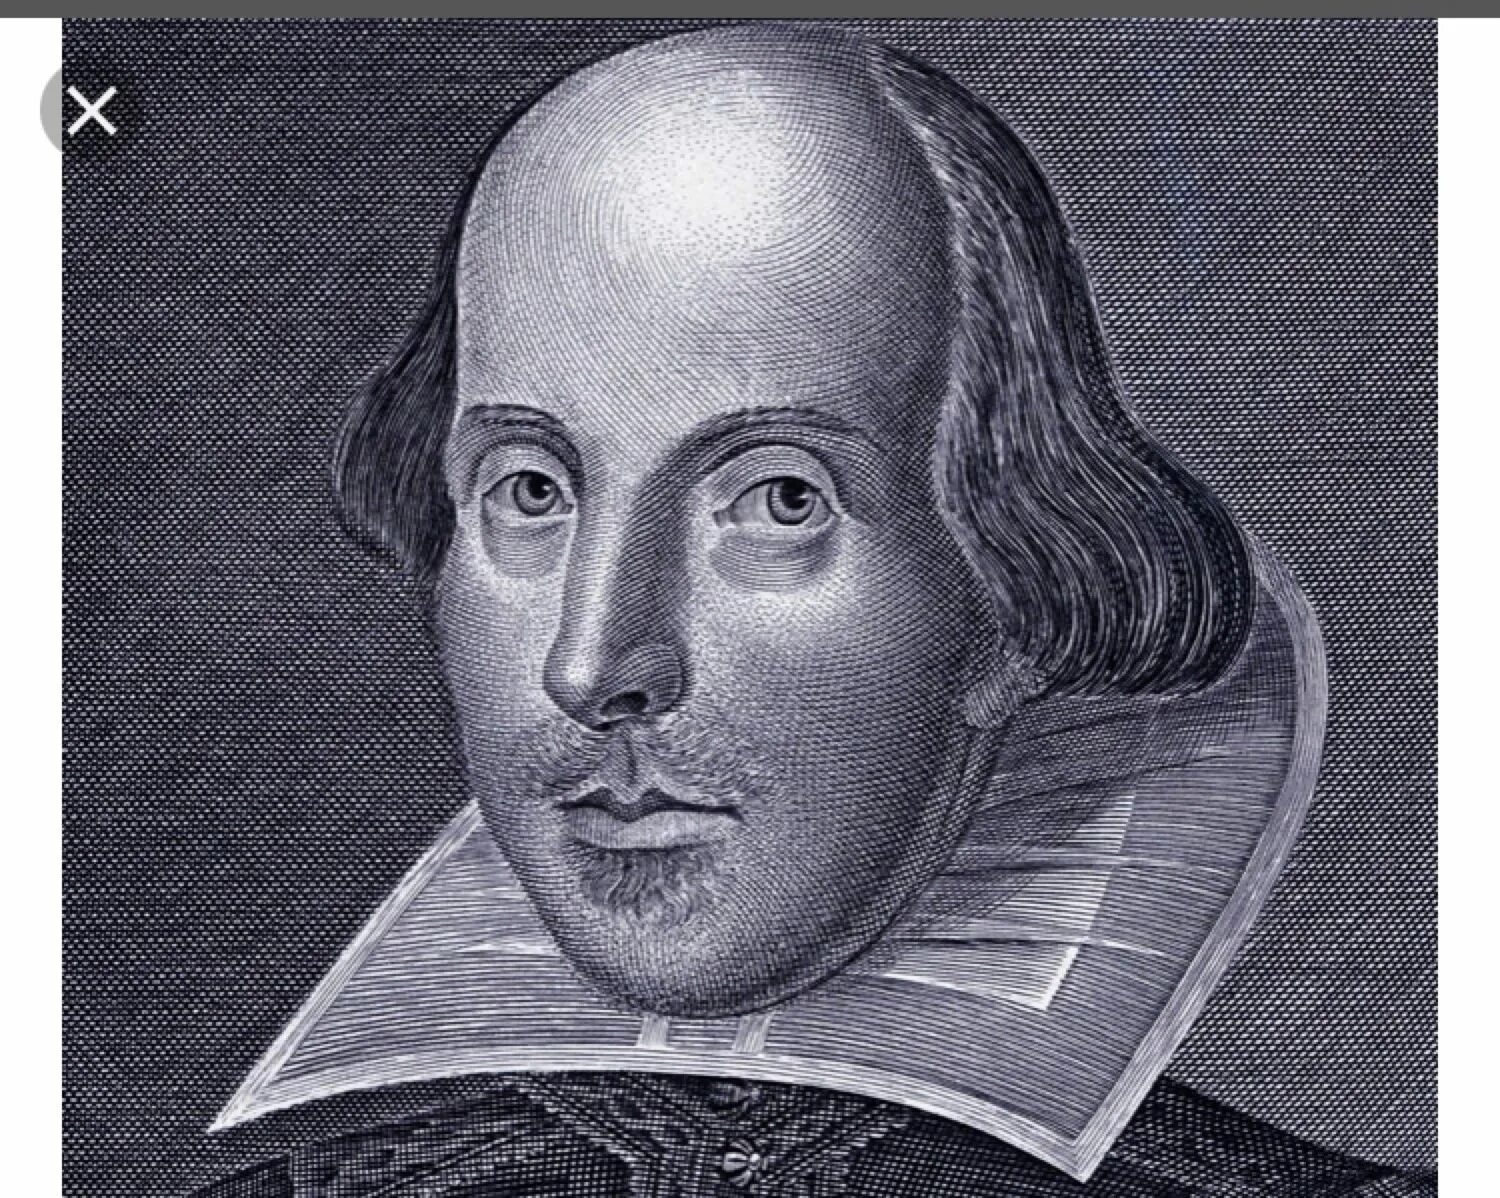 Вильям Шекспир портрет. Портрет Уильям Шекспир портрет. Друшаутский портрет Шекспира. Уильям Шекспир автопортрет. William shakespeare s